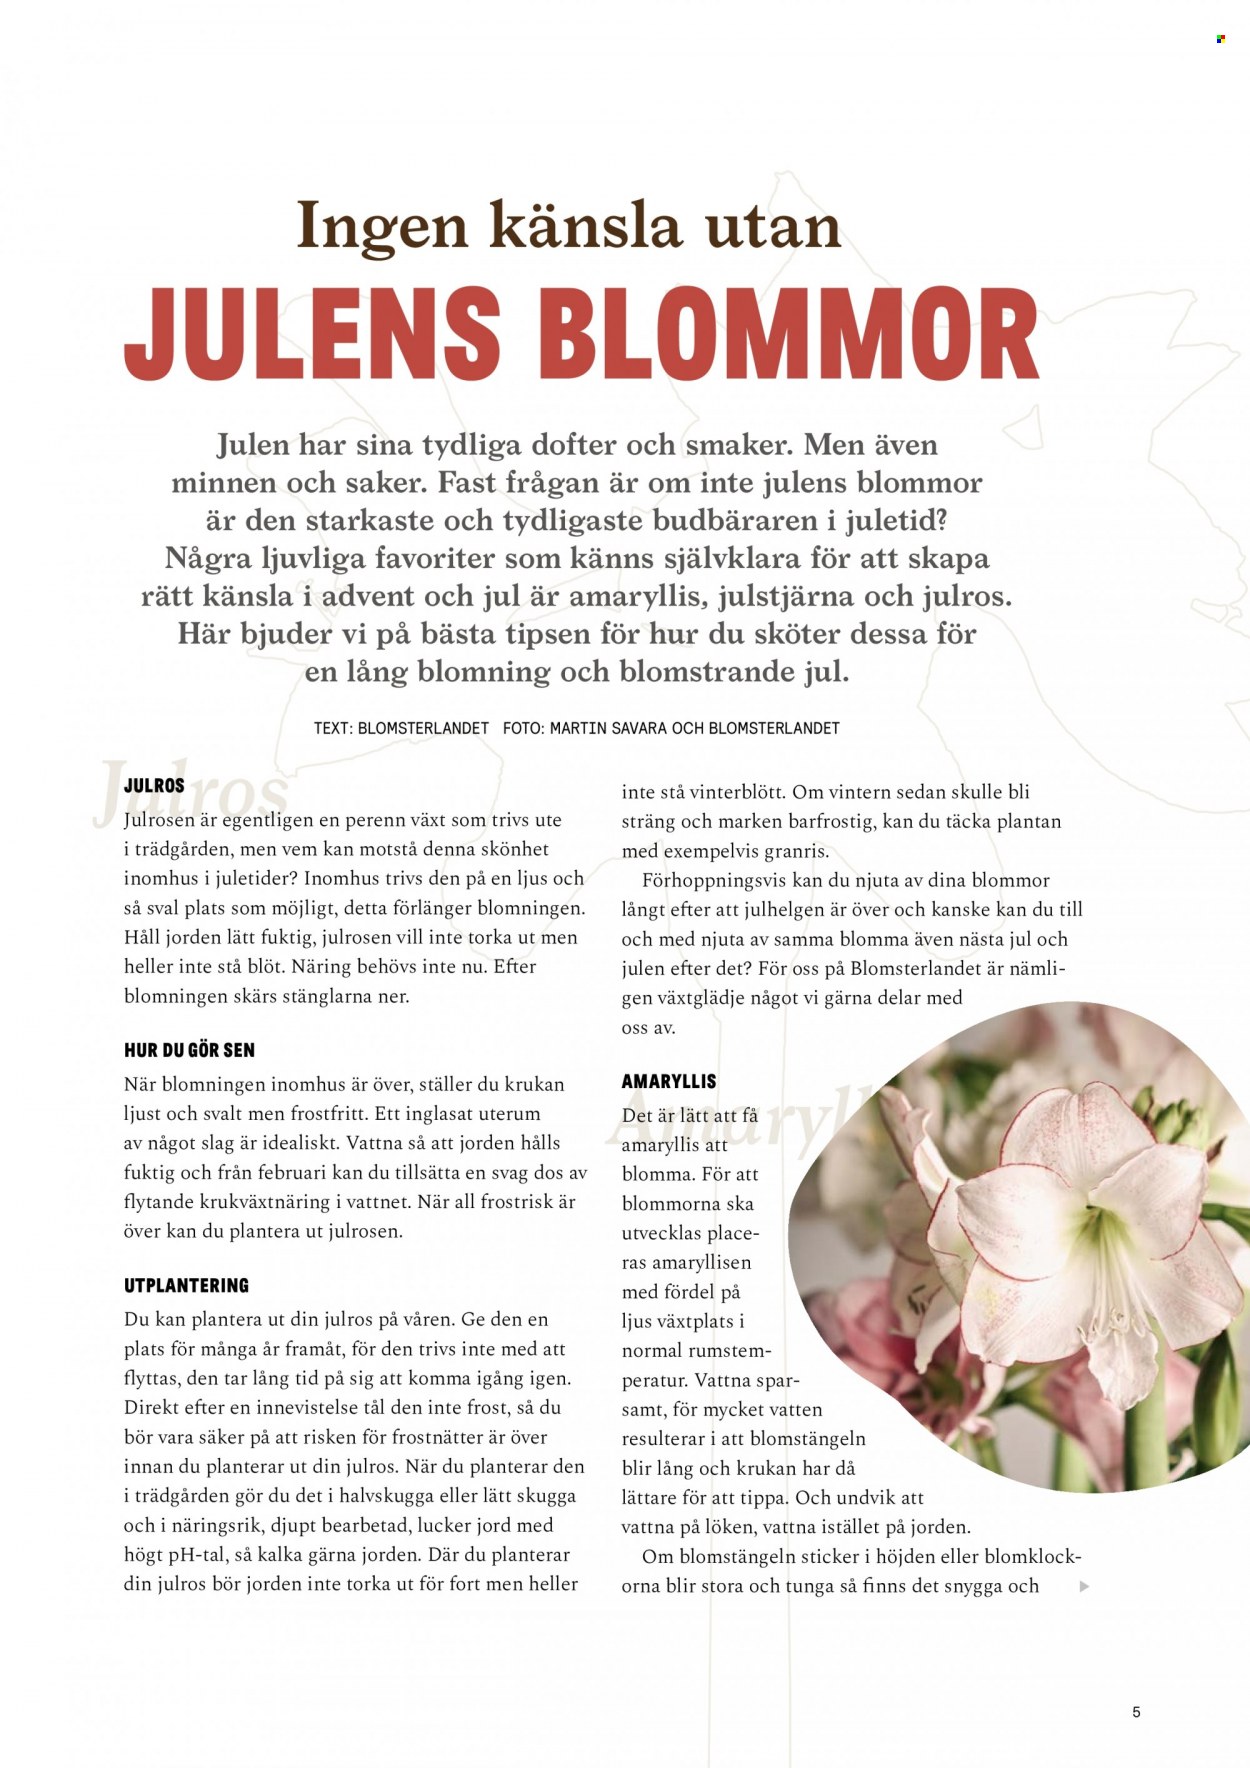 thumbnail - Blomsterlandet reklamblad - varor från reklamblad - julstjärna, ljus, Julros, Amaryllis, blomma. Sida 5.